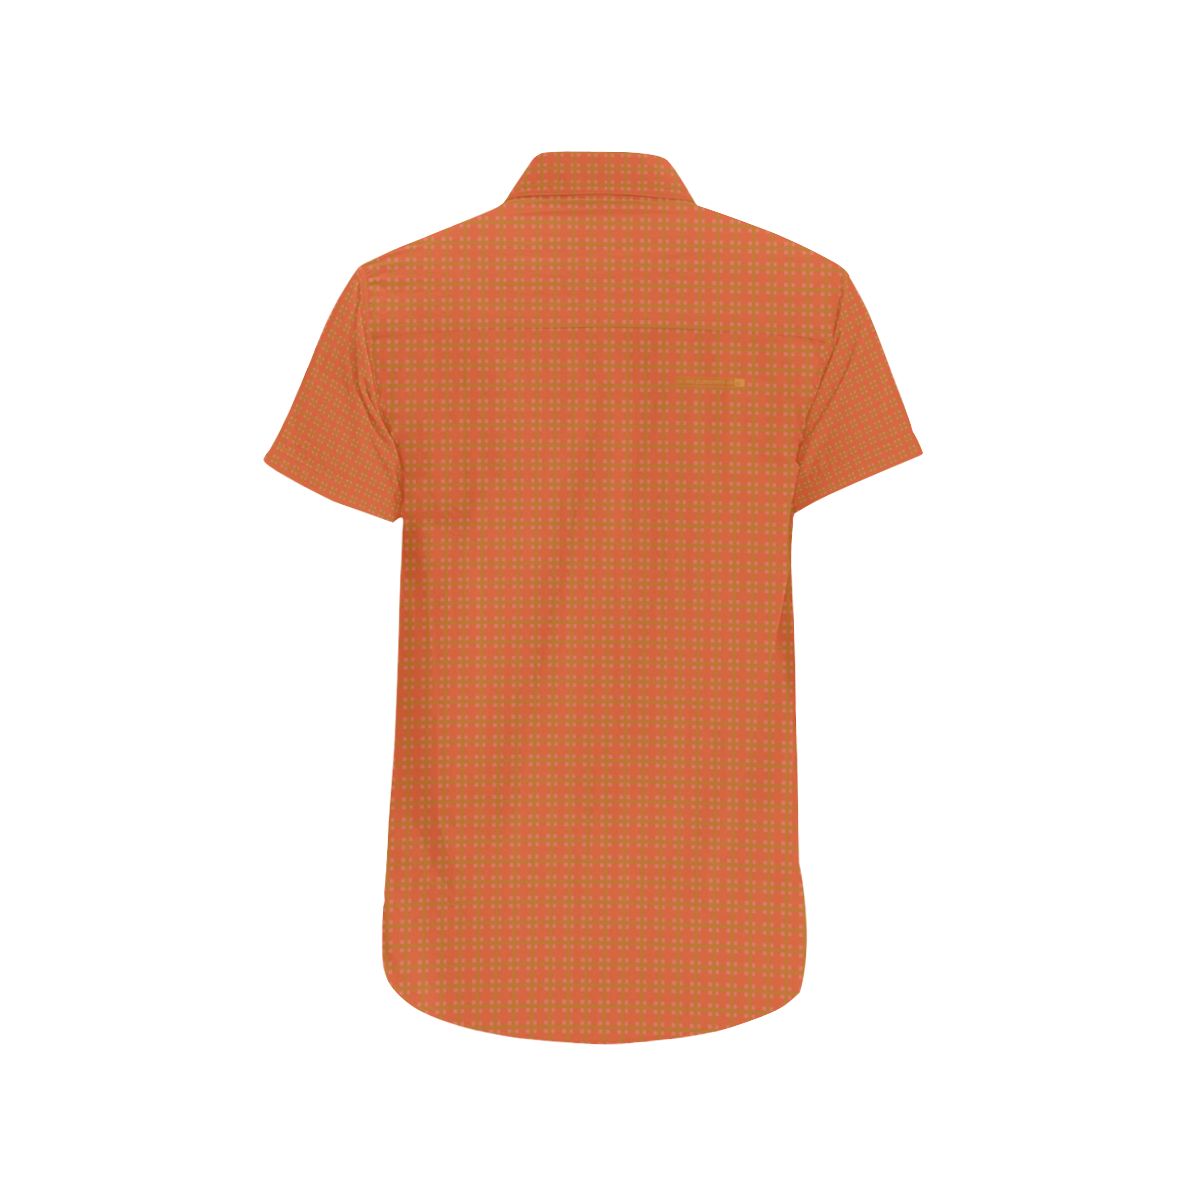 EmploymentaGrid 31 Men's All Over Print Short Sleeve Shirt (Model T53)